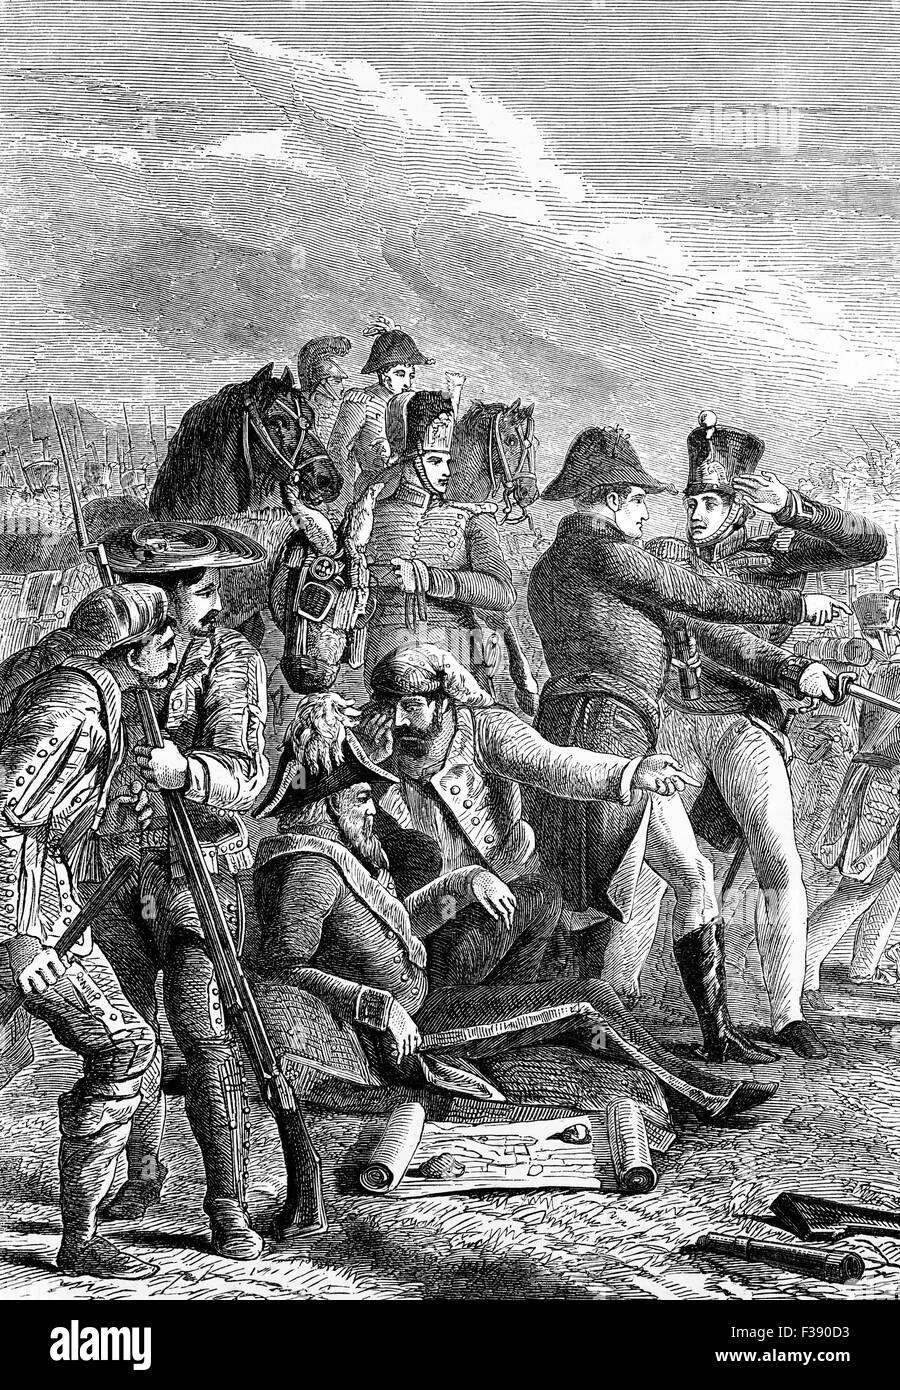 La Bataille de Talavera (27-28 juillet 1809) fut une bataille livrée quelque 120 kilomètres au sud-ouest de Madrid, l'Espagne dans la guerre d'indépendance lorsque l'armée britannique sous le commandement de Sir Arthur Wellesley (Duc de Wellington) combinée avec une armée espagnole dans les opérations contre les territoires de Madrid. Banque D'Images